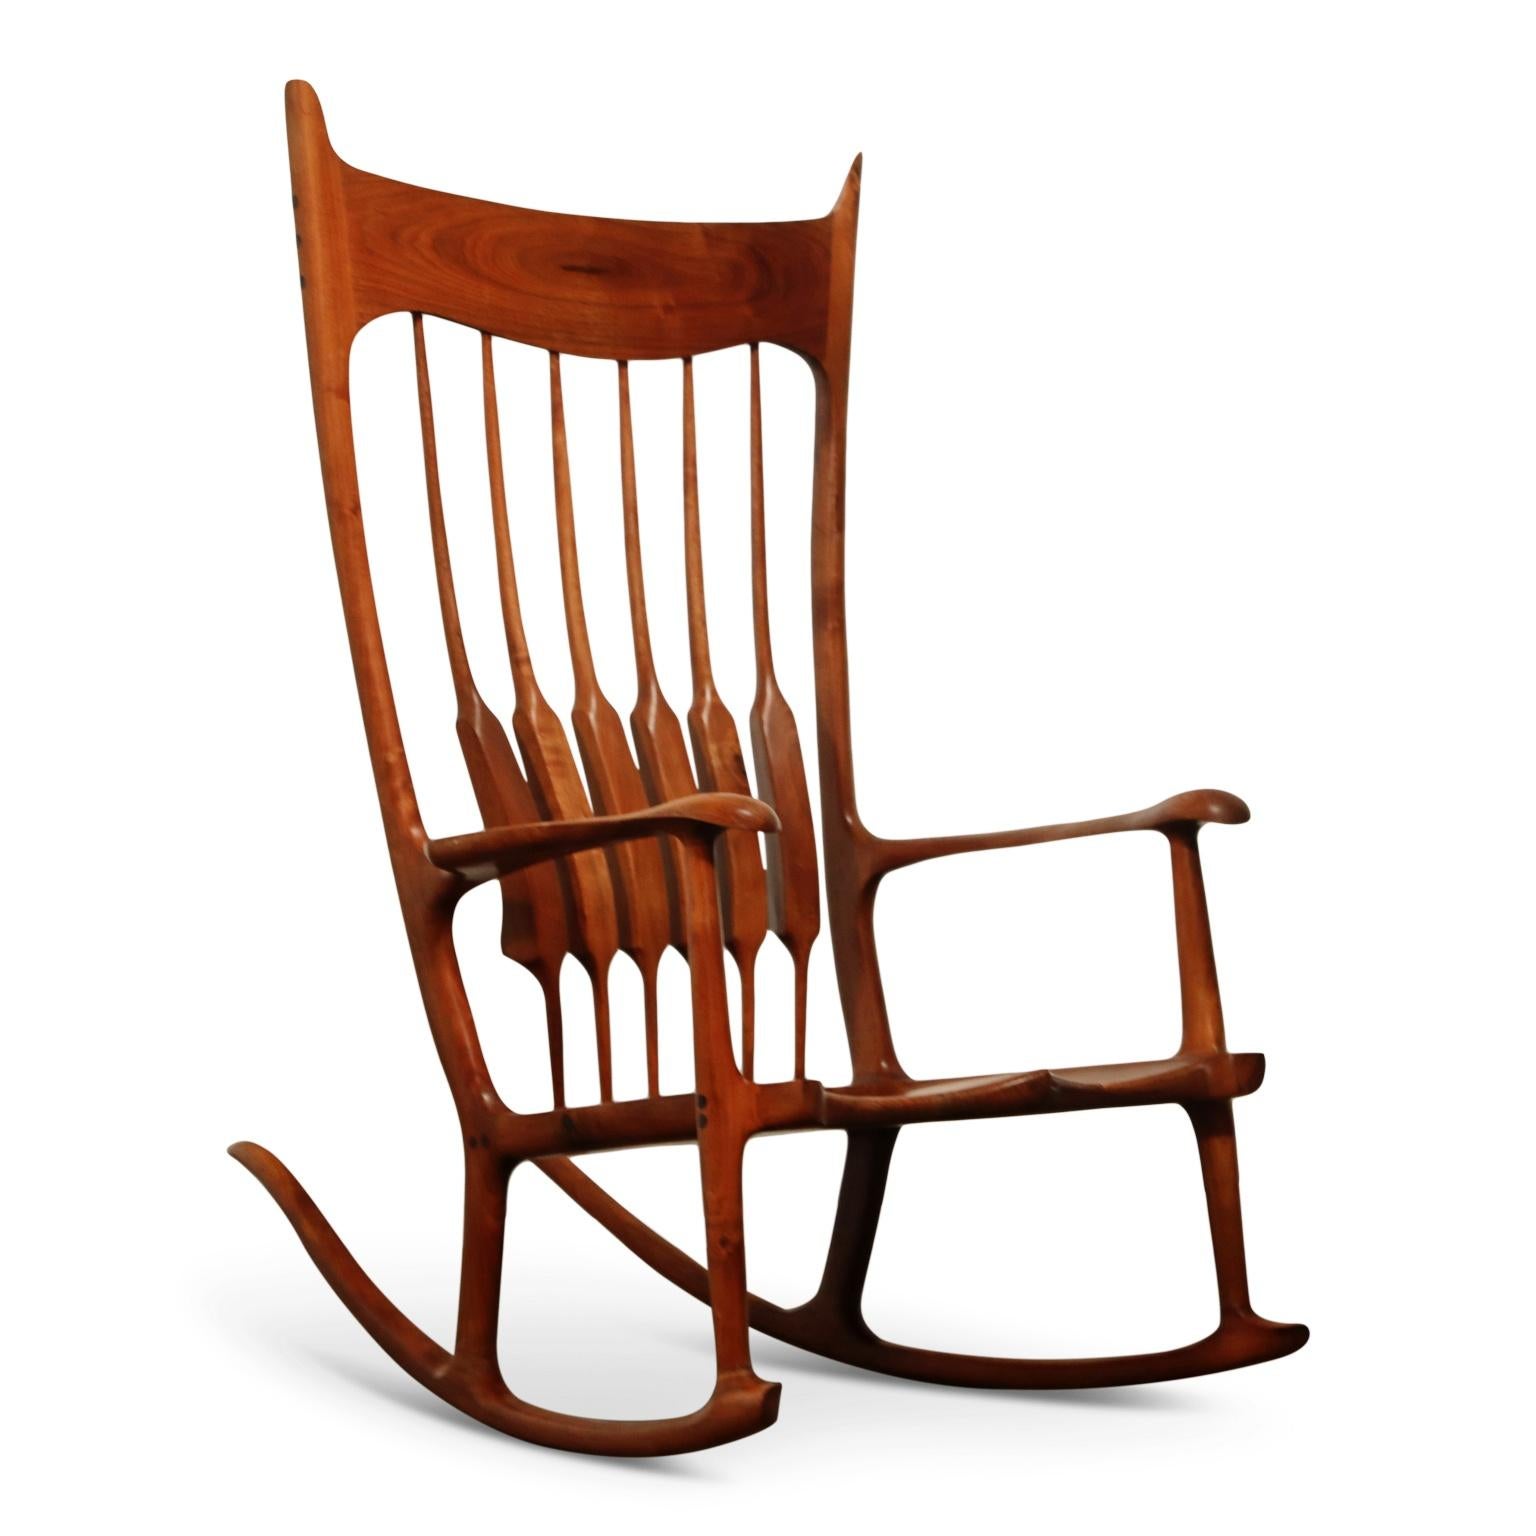 Hardwood Oversized Sam Maloof Style Studio Craftsman Rocking Chair, Signed and Dated